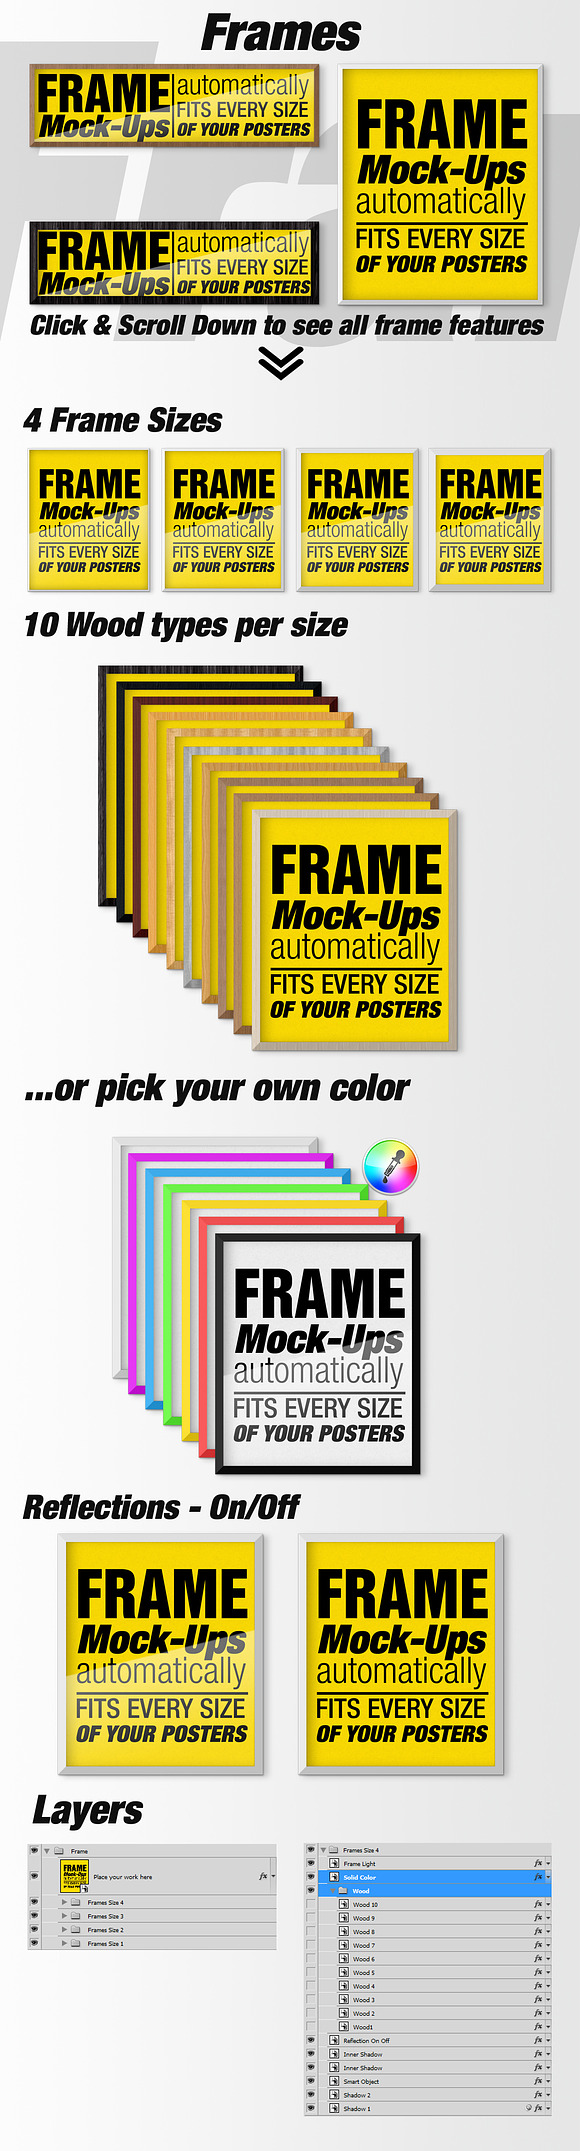 Canvas Mockups - Frames Mockups v 3 in Print Mockups - product preview 5